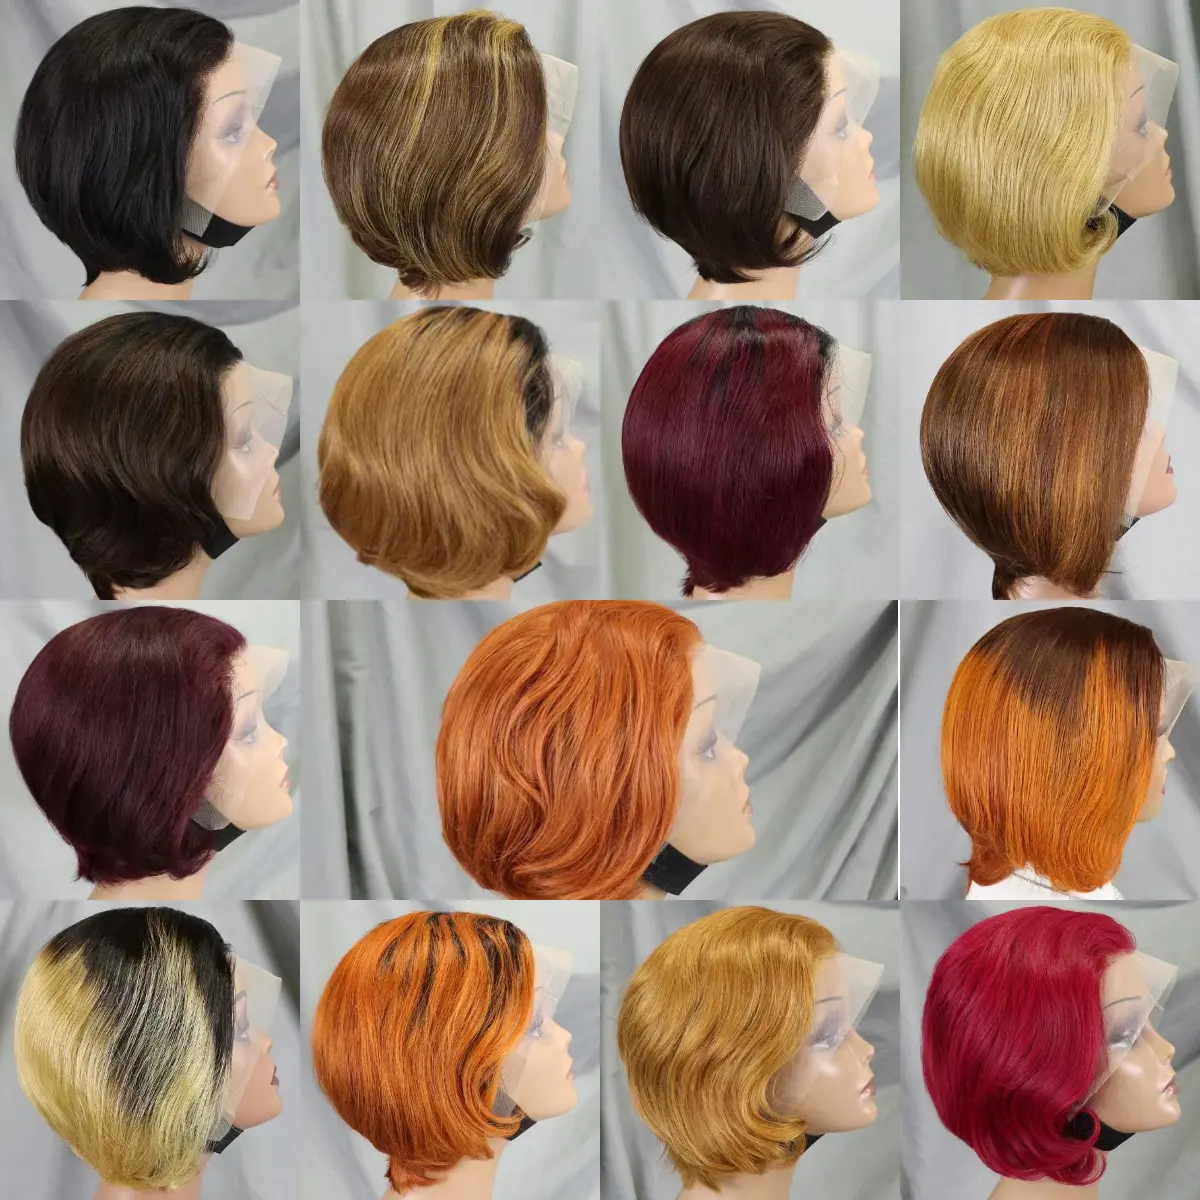 Commercio all'ingrosso indiano vergine zenzero arancione 13x4 parrucca anteriore in pizzo trasparente dritto corto Pixie Cut parrucche dei capelli umani per le donne nere